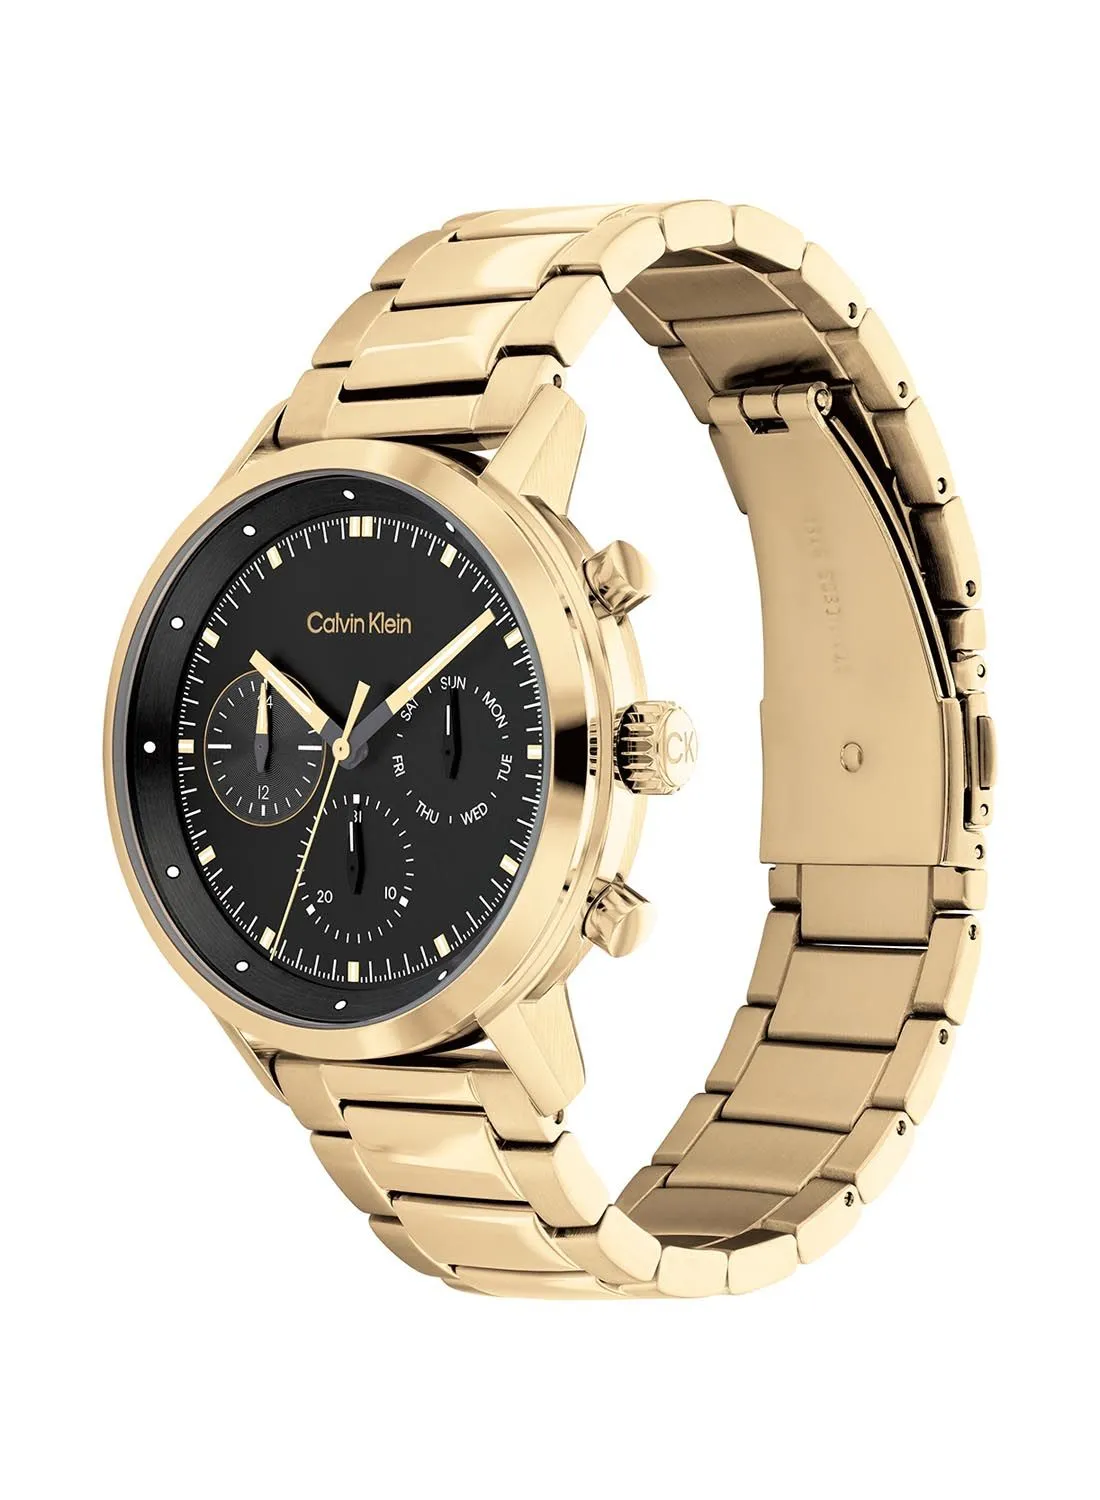 CALVIN KLEIN Analog Round Waterproof  Wrist Watch With Gold Strap 25200065